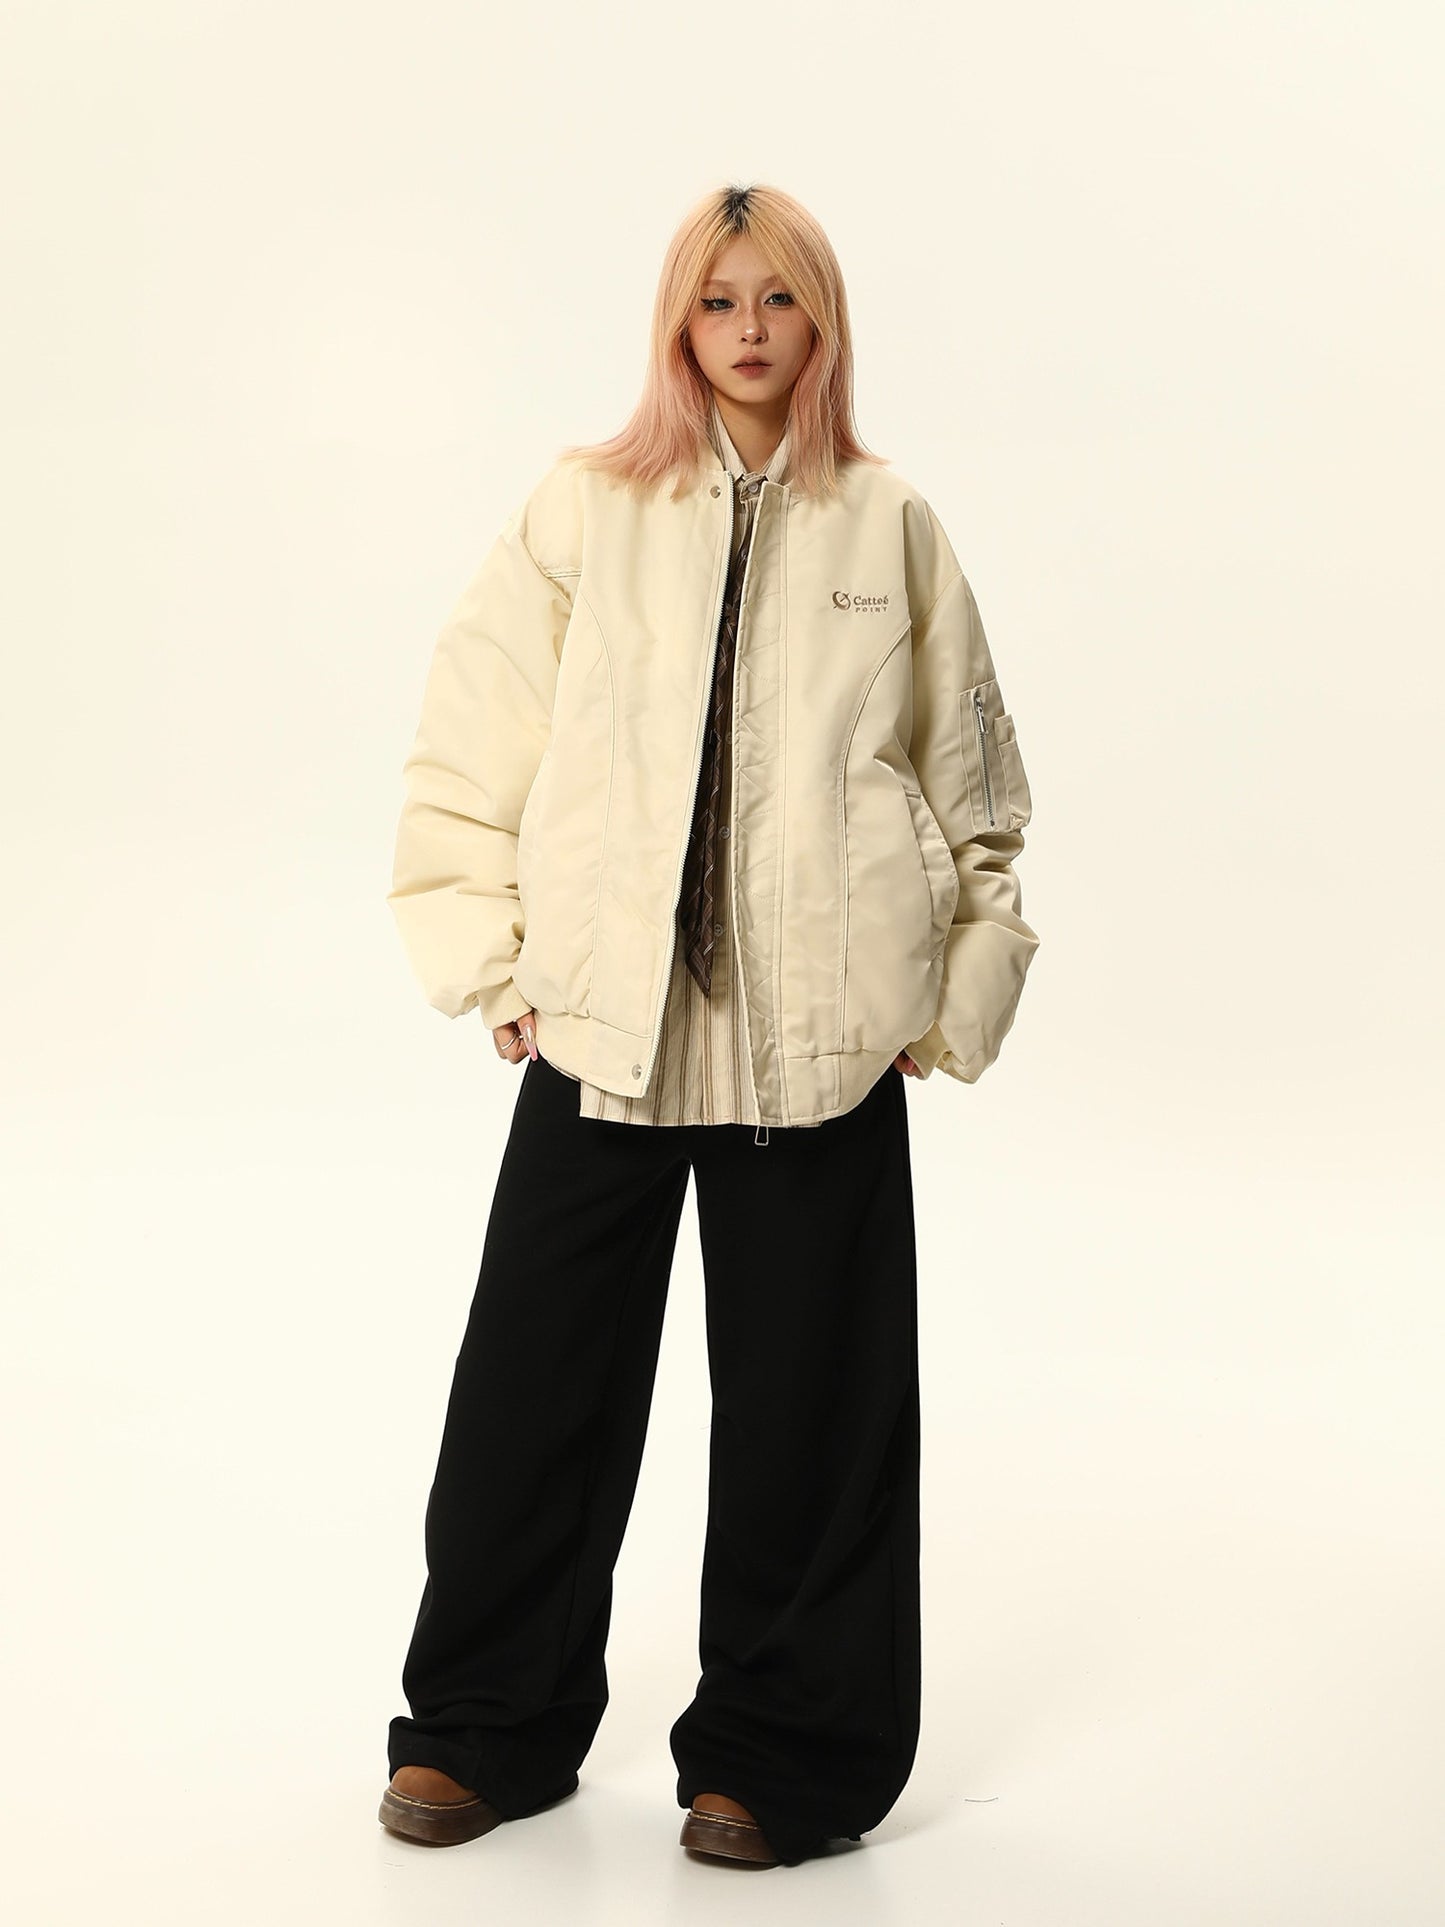 American streetwear cotton jacket